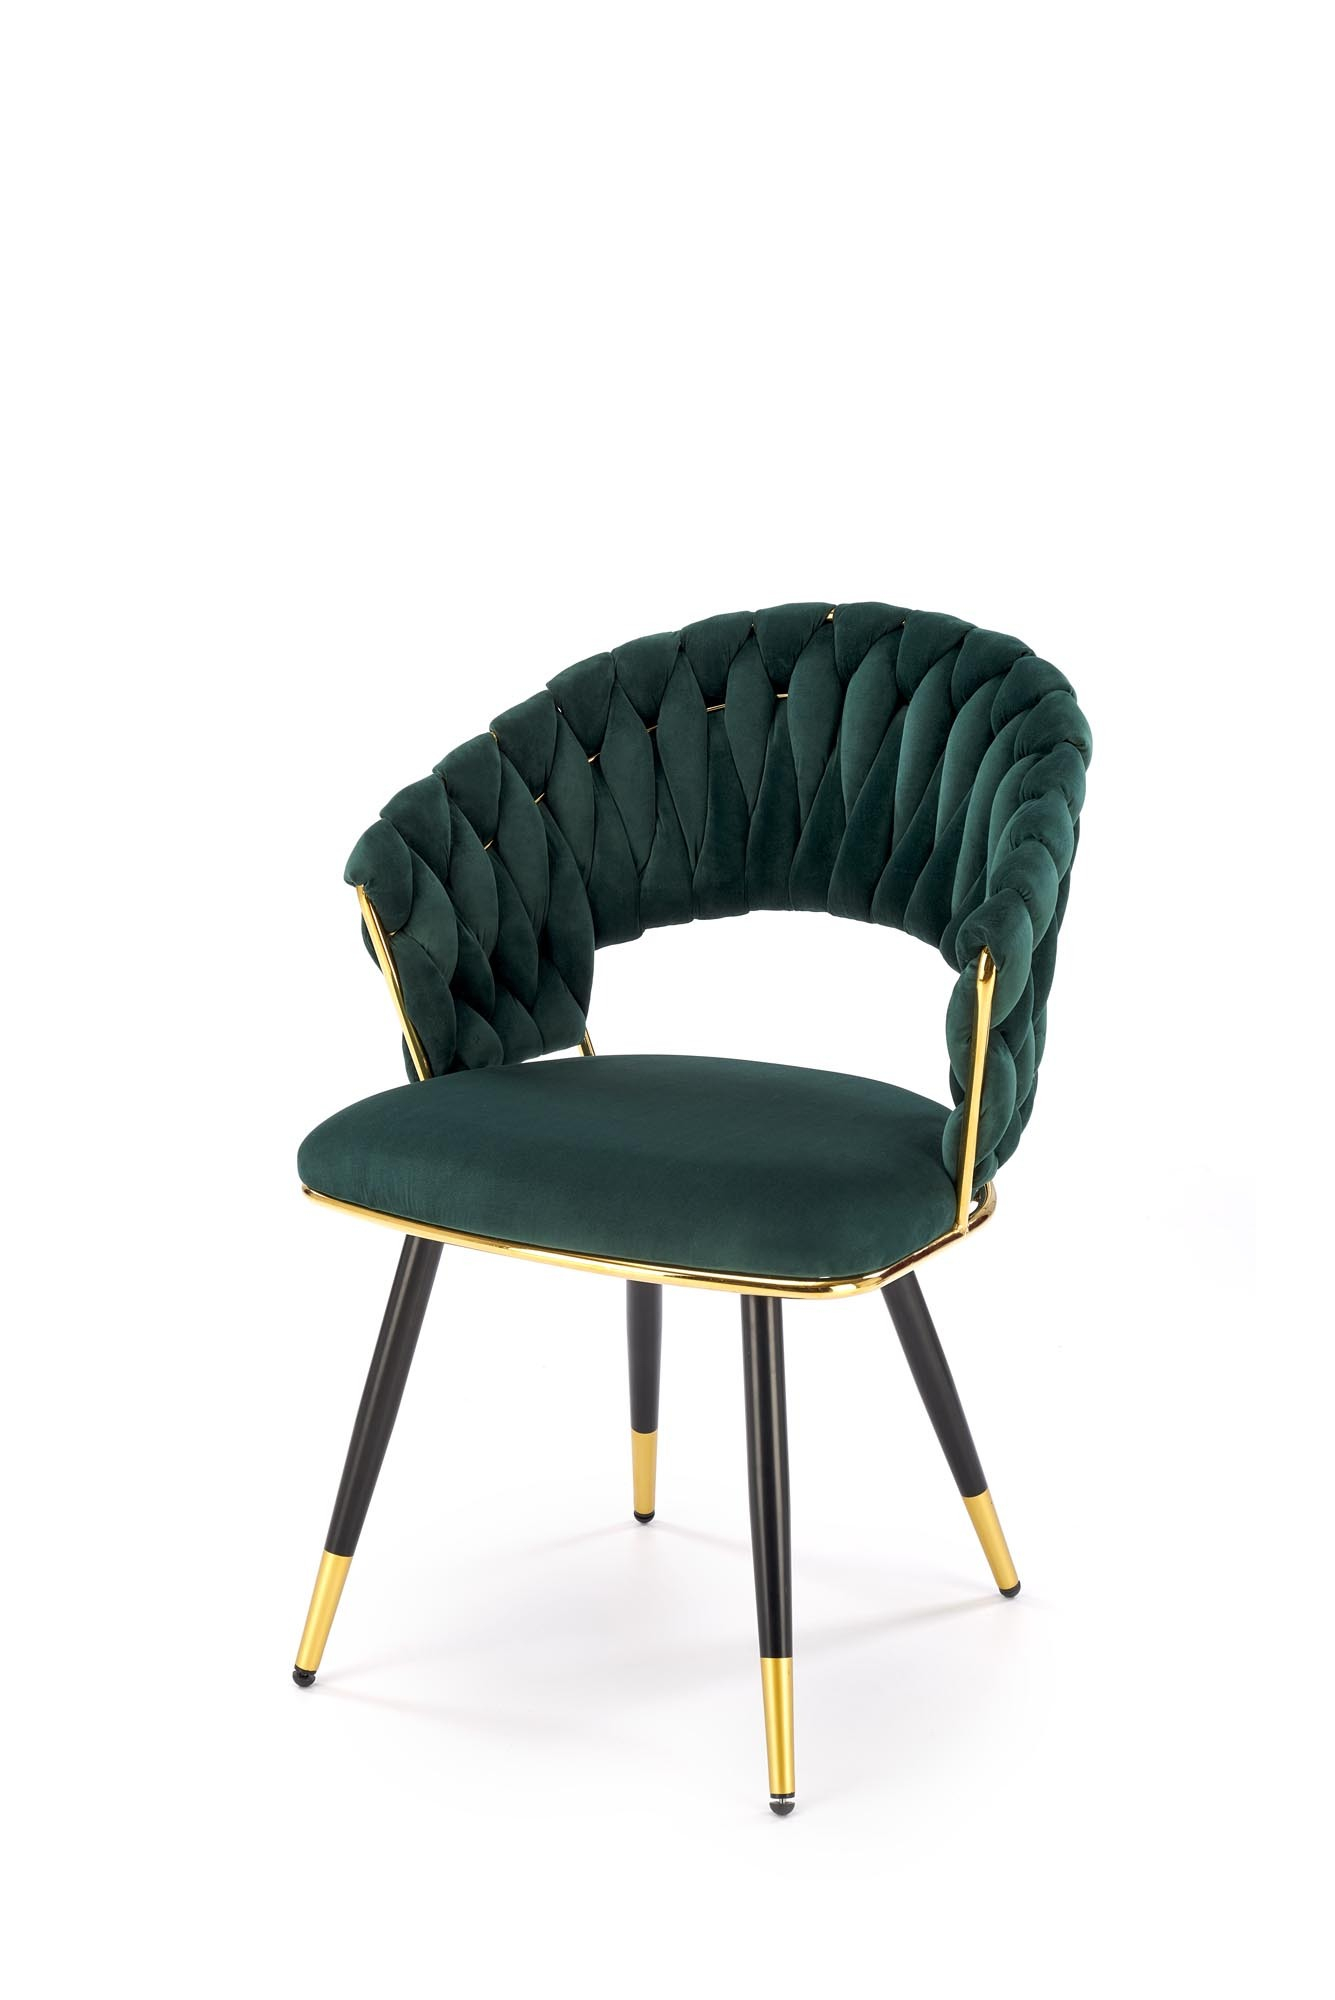 K551 krzesło ciemny zielony